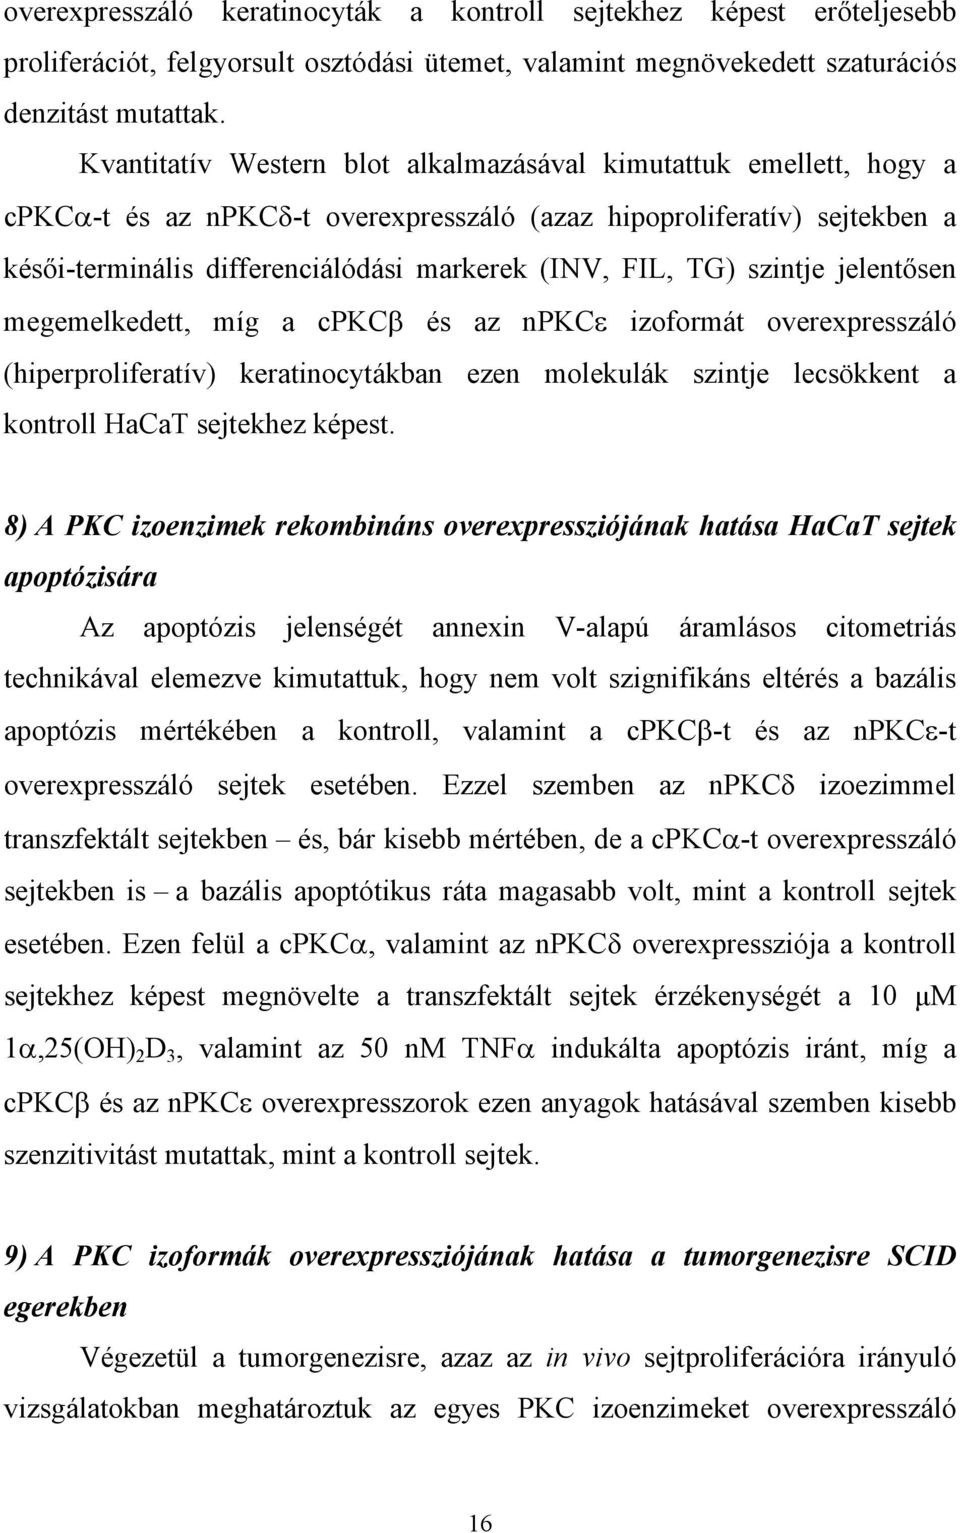 TG) szintje jelent sen megemelkedett, míg a cpkc és az npkc izoformát overexpresszáló (hiperproliferatív) keratinocytákban ezen molekulák szintje lecsökkent a kontroll HaCaT sejtekhez képest.